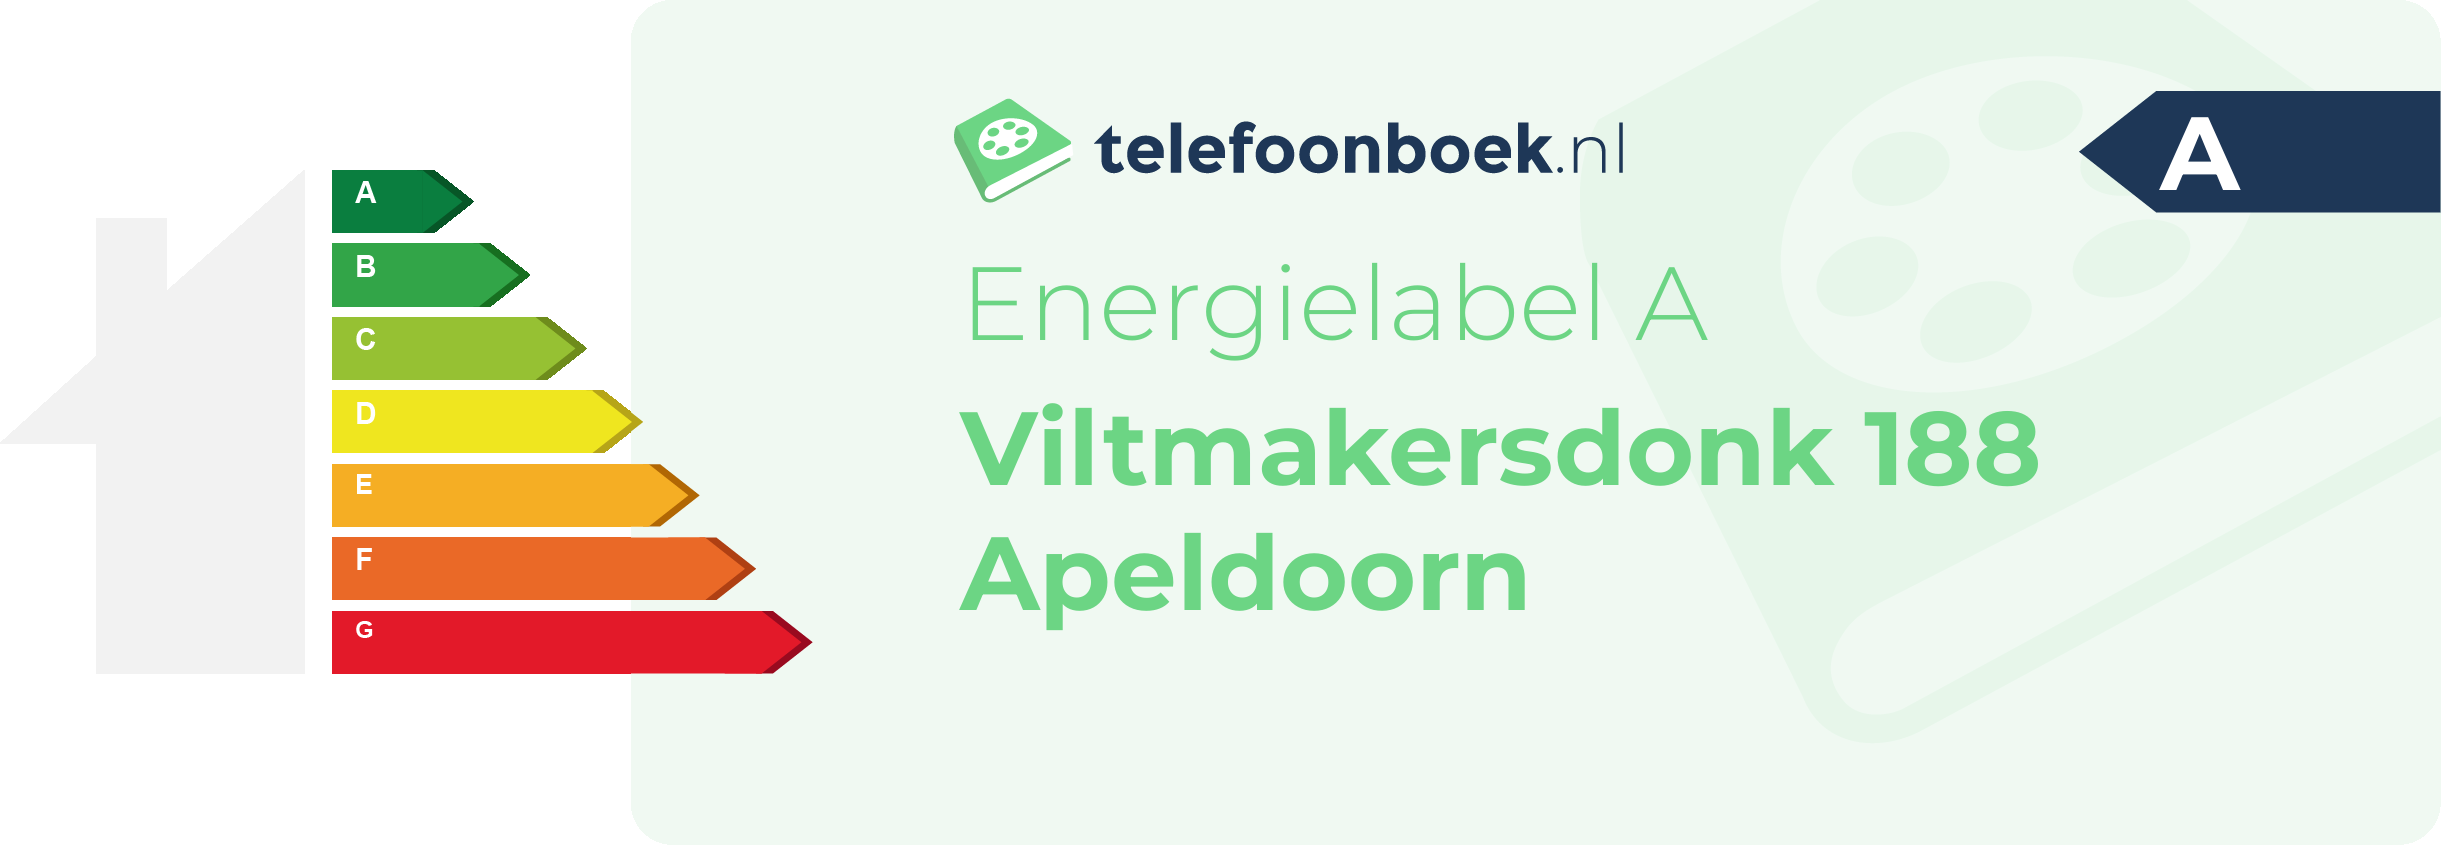 Energielabel Viltmakersdonk 188 Apeldoorn